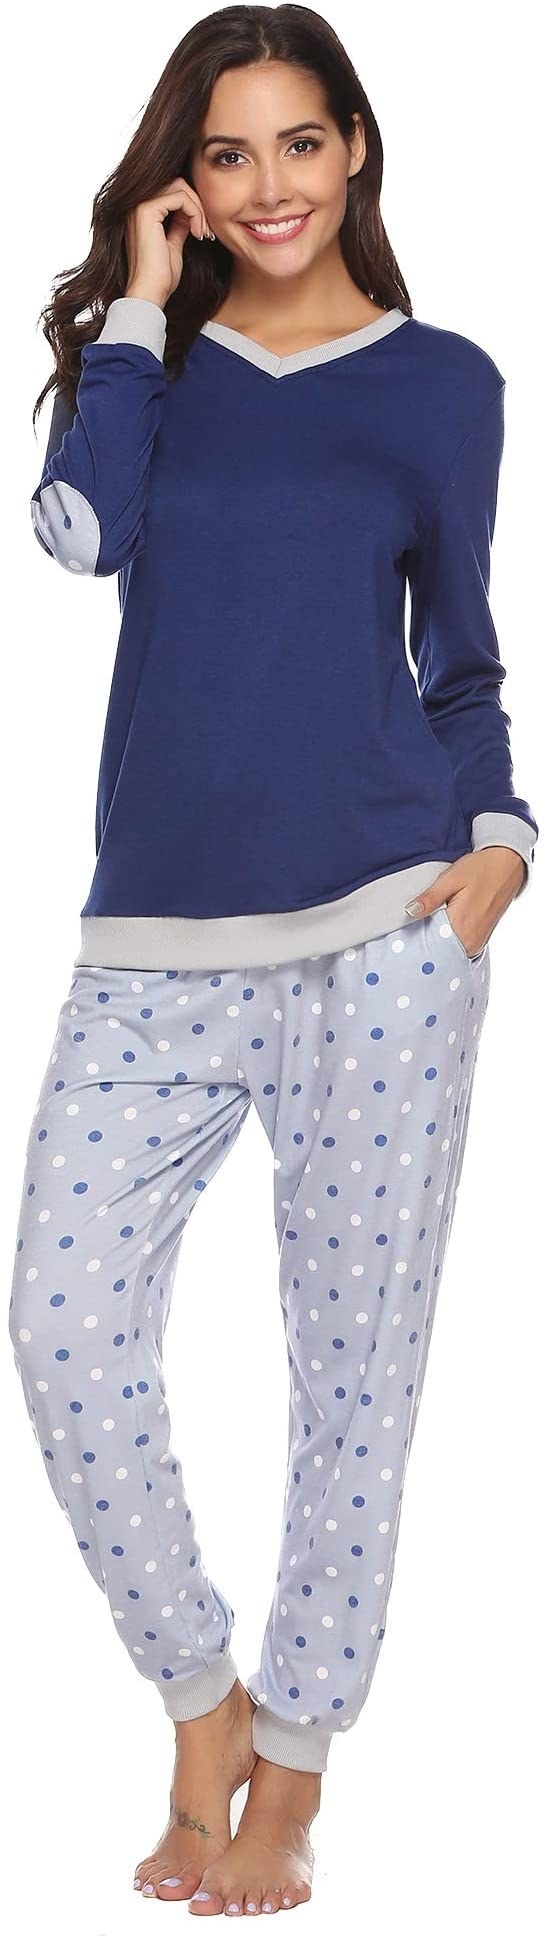 Pijama azul con pantalón tipo jogger